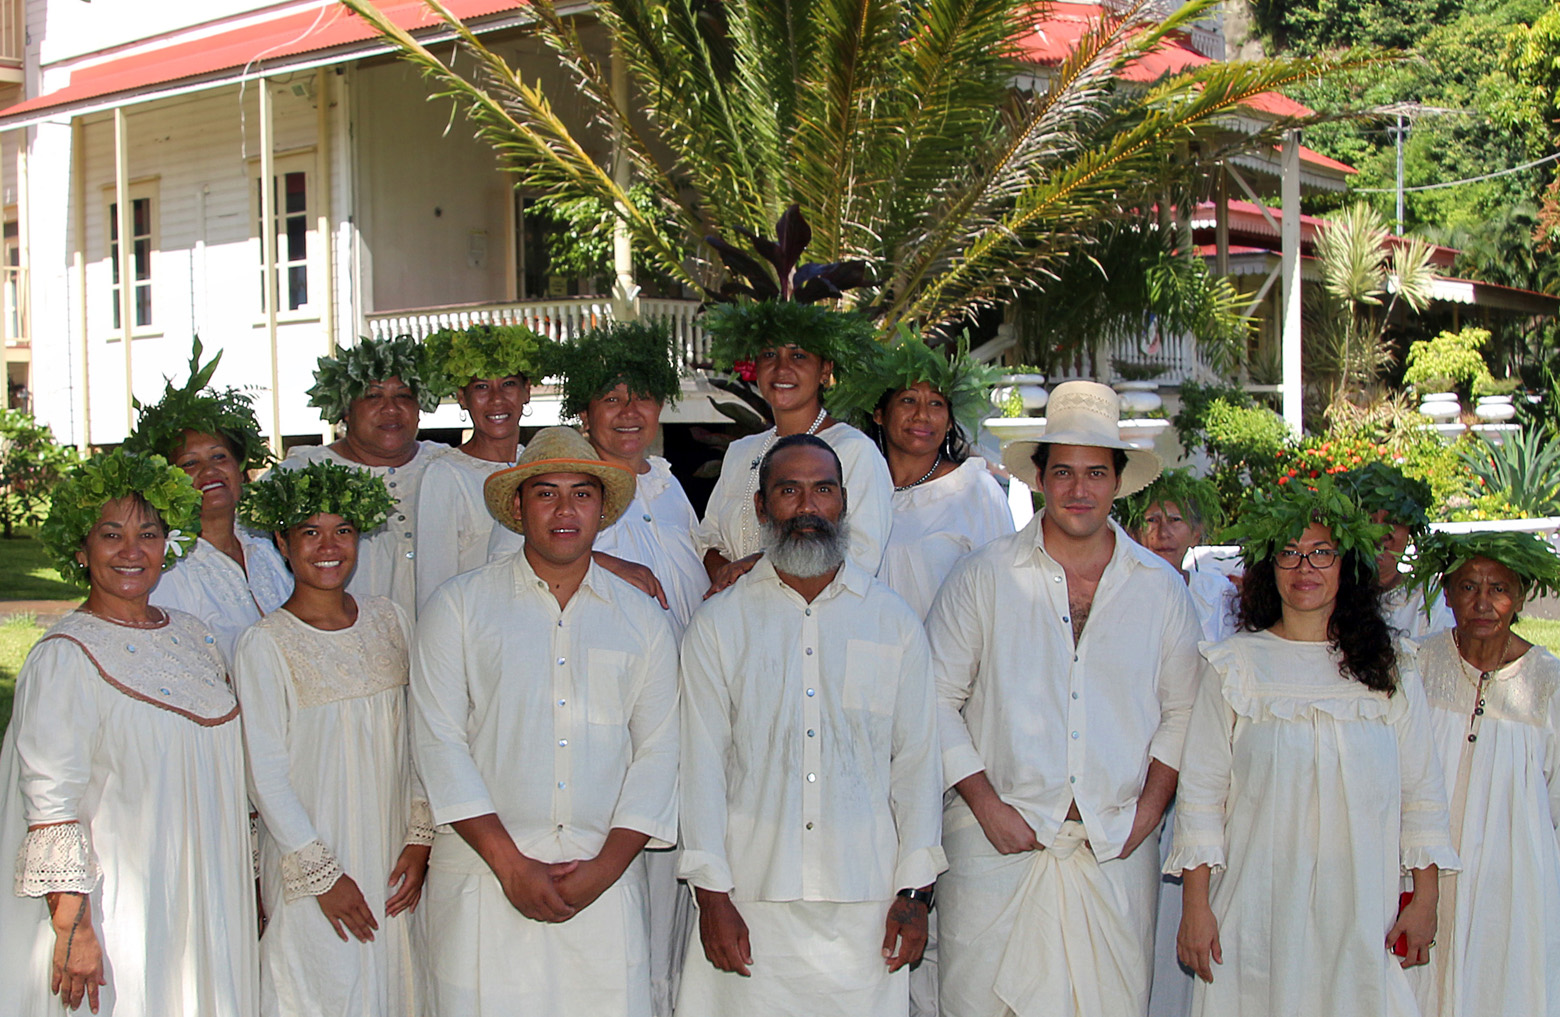 Le festival Te Rima Fa’tau’aroha est organisé par la fédération Raiamanu, fédération des associations artisanales de Arue qui existe depuis 1998.